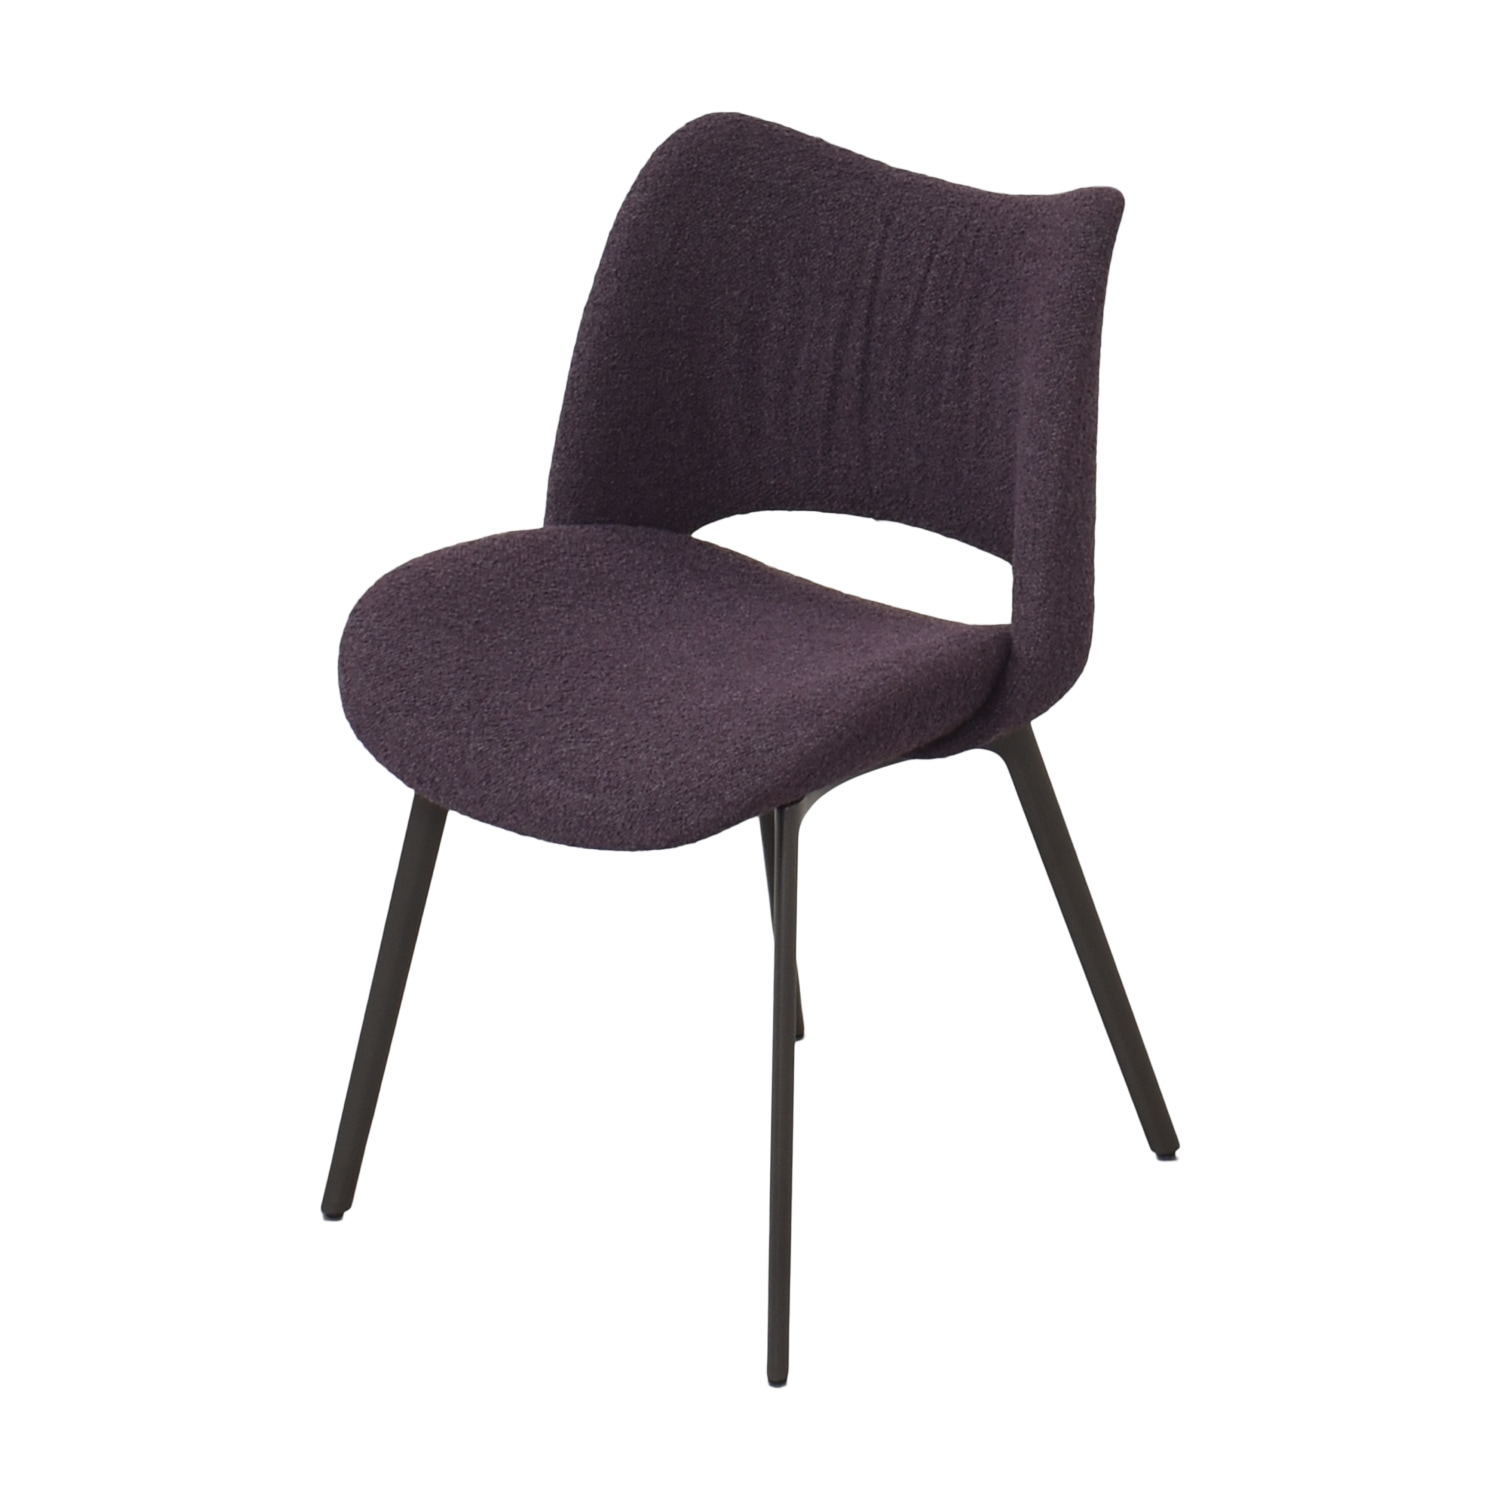 Poltrona Frau Poltrona Frau Nice Chairs purple